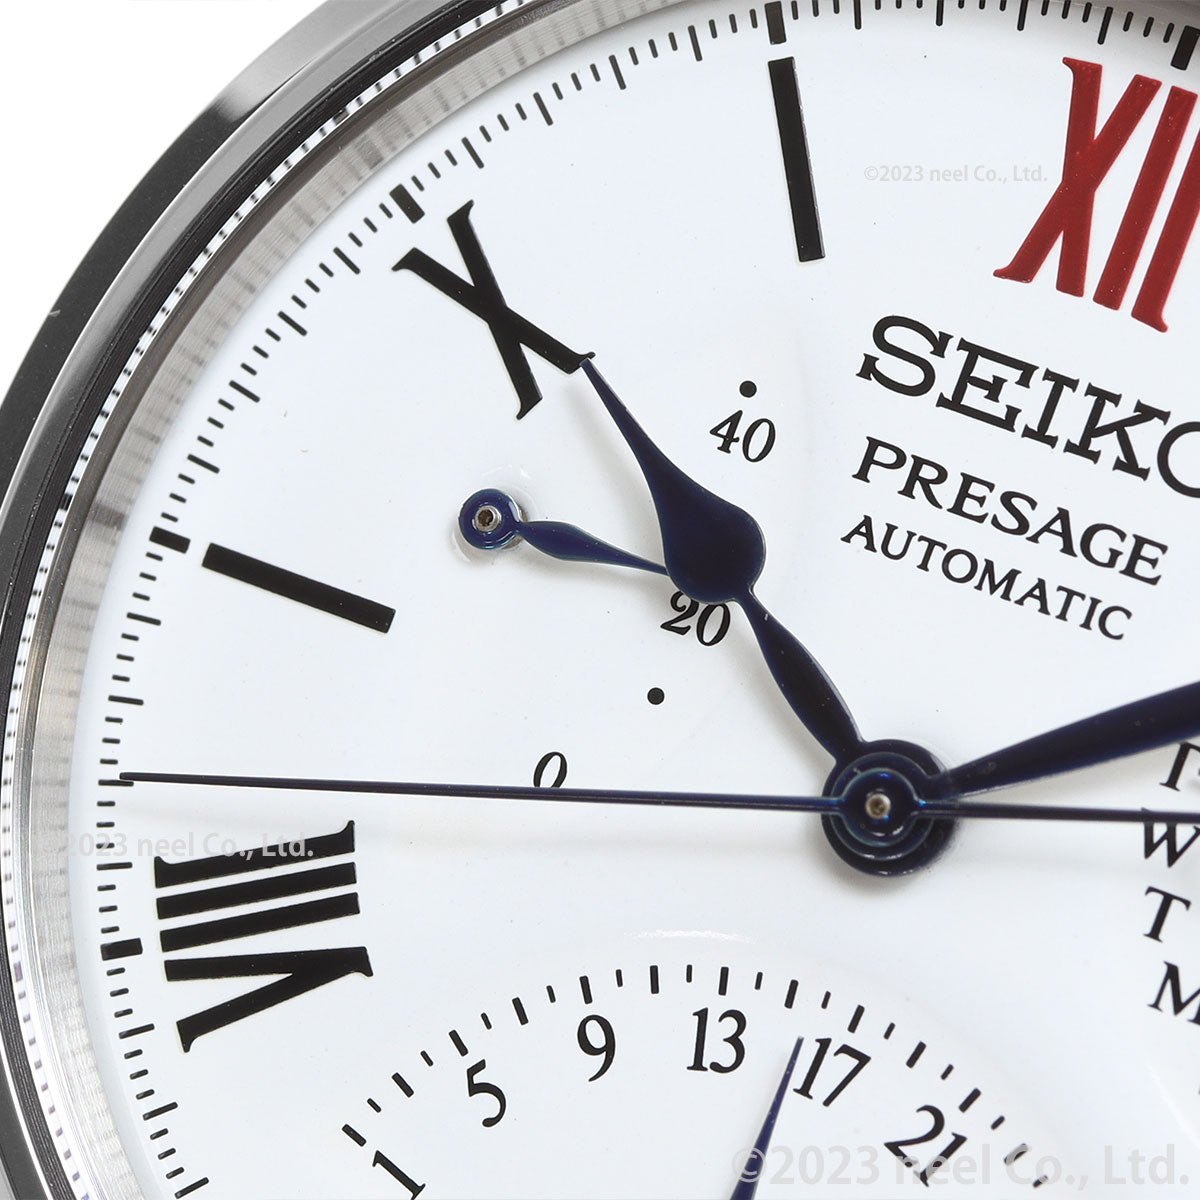 セイコー プレザージュ SEIKO PRESAGE コアショップ専用 流通限定 セイコー腕時計110周年記念限定 クラフツマンシップシリーズ 琺瑯ダイヤル SARD017